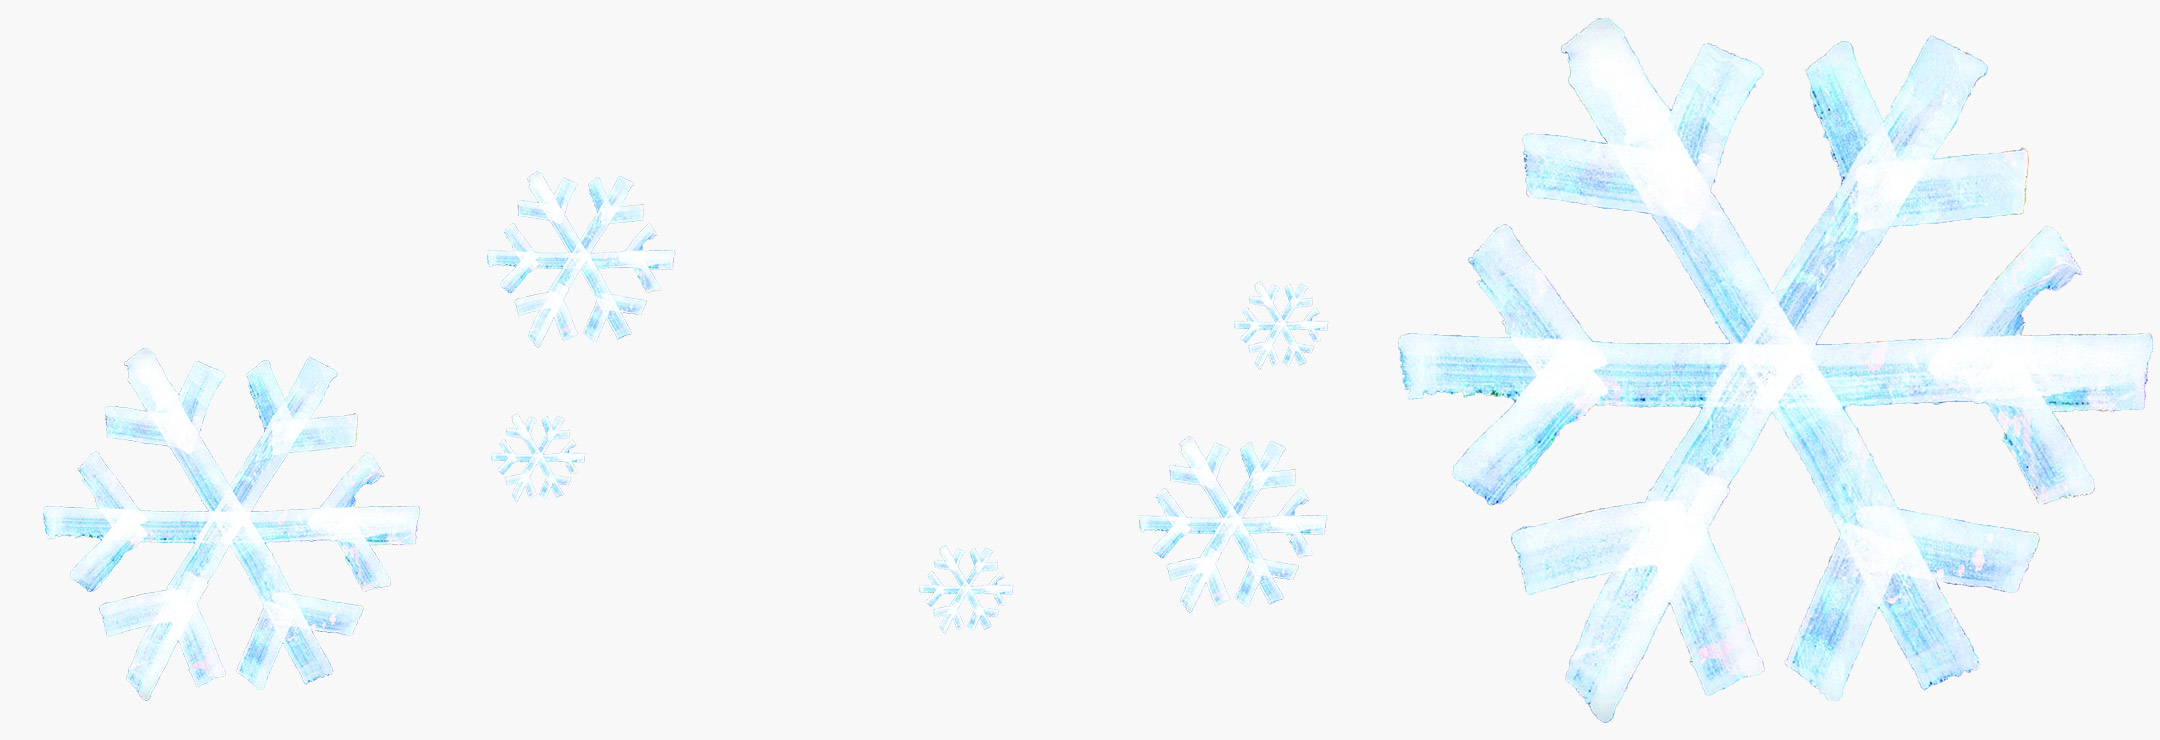 Snow Patrol ”Run” från Reworked